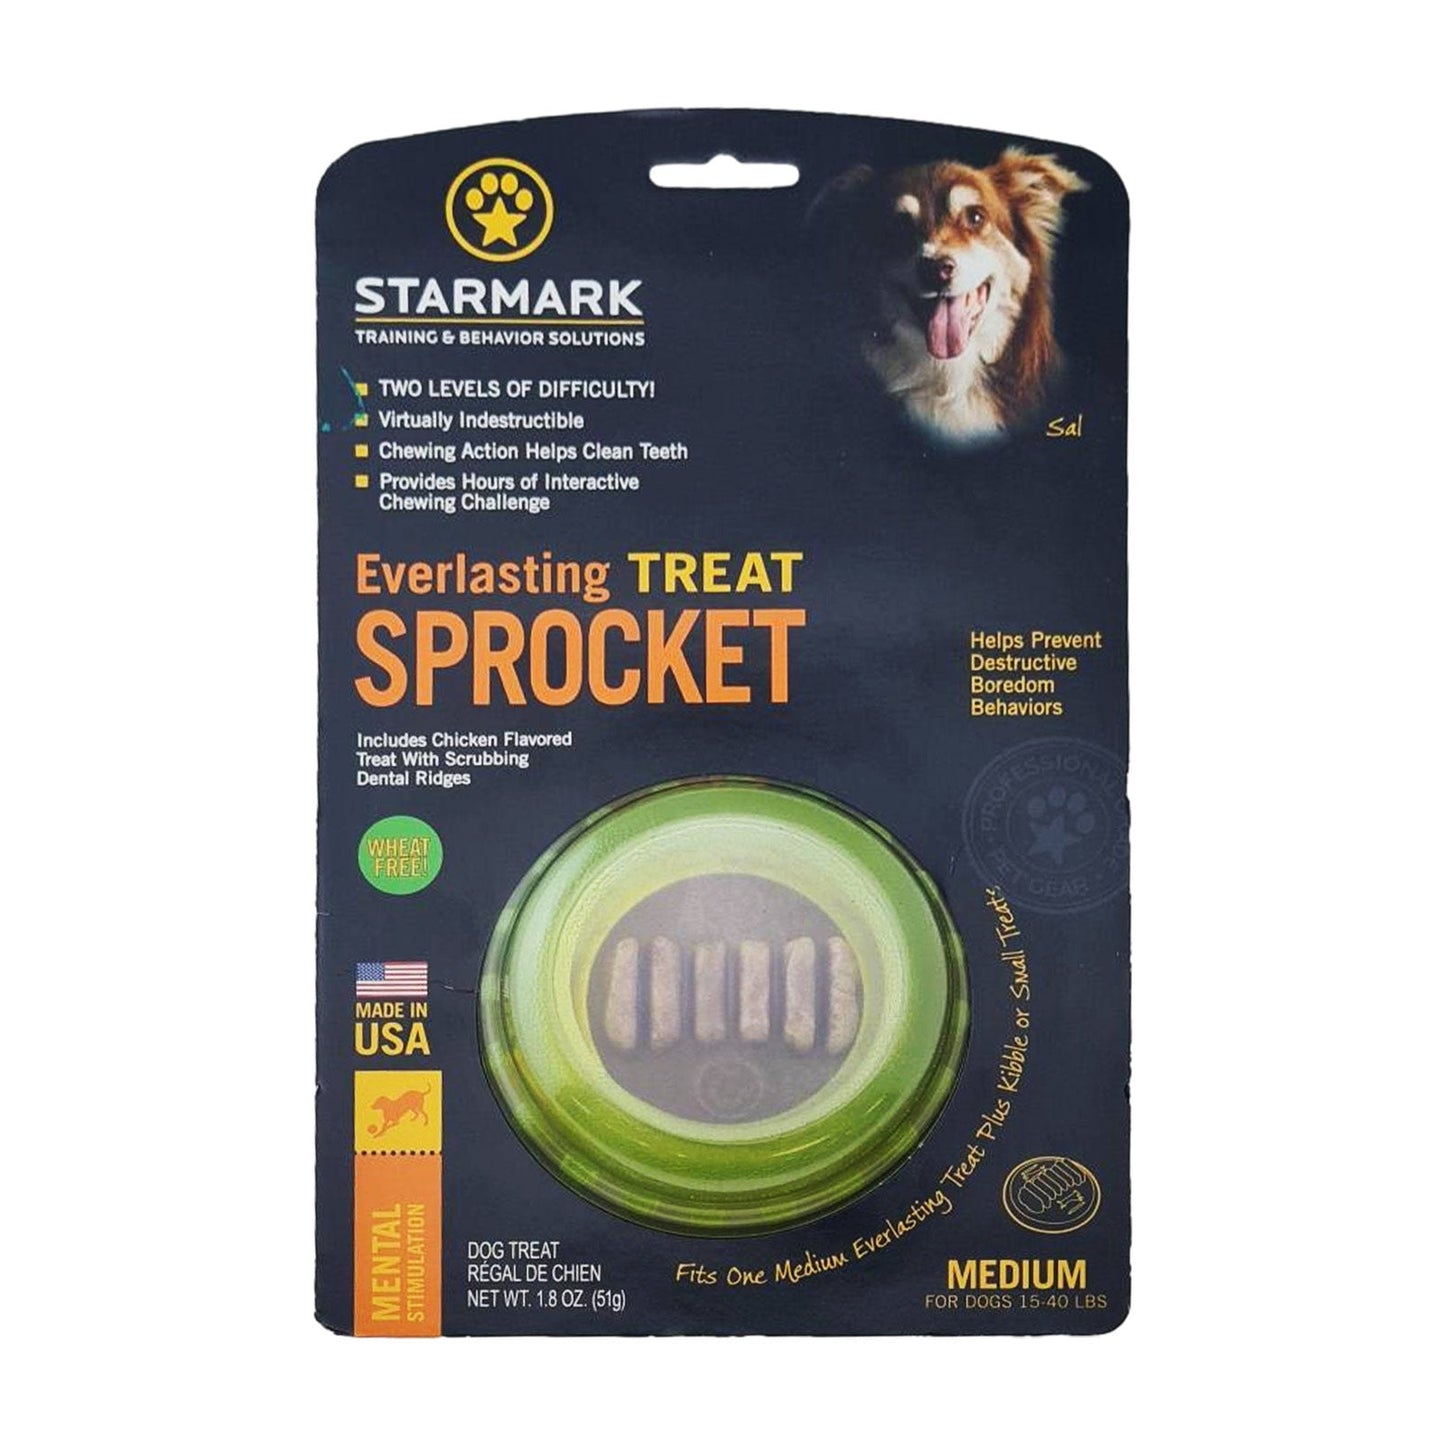 Starmark Everlasting Sprocket Small - Woonona Petfood & Produce